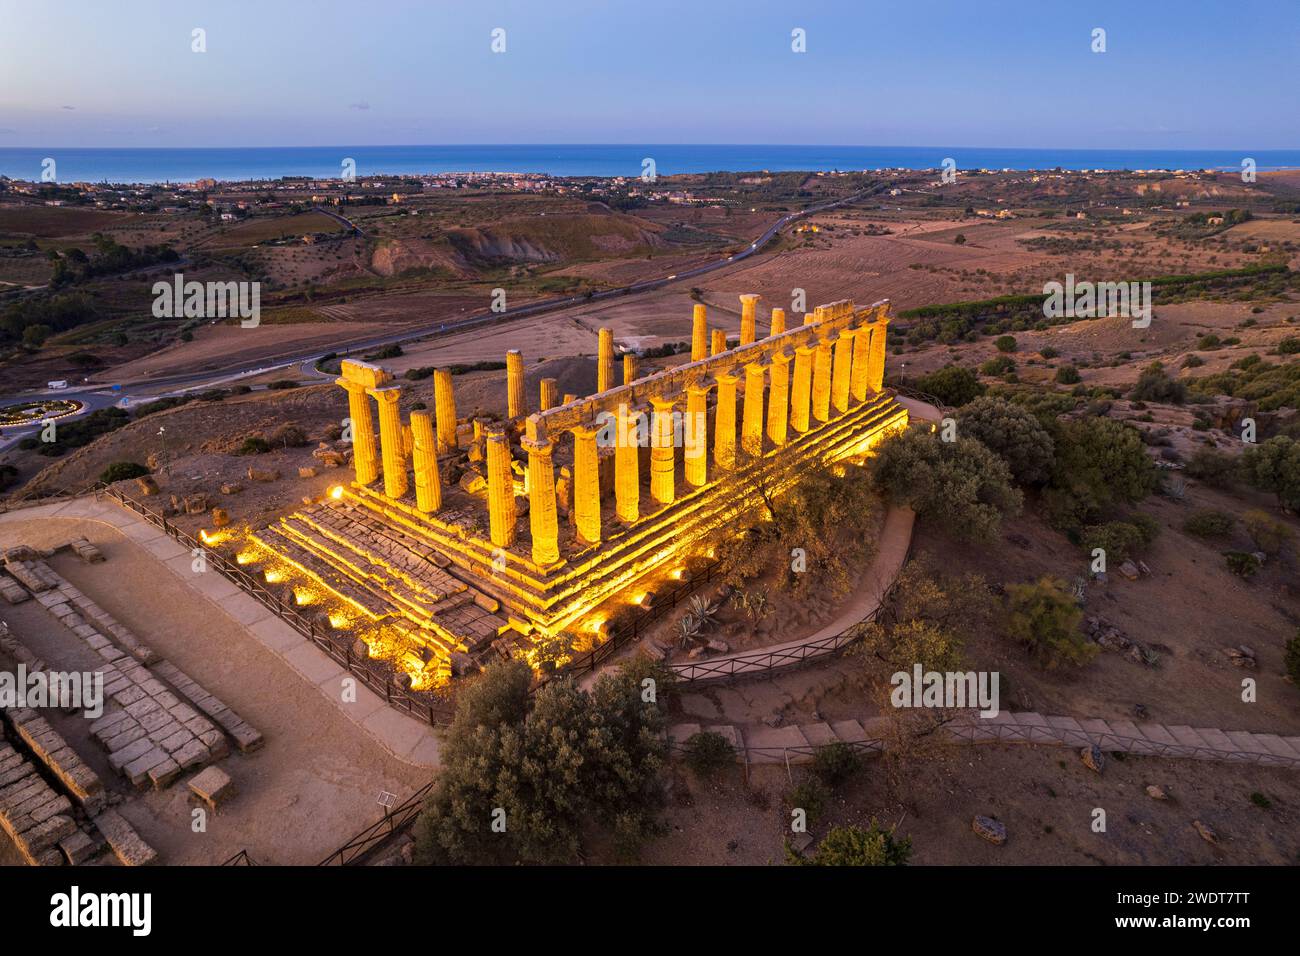 Der beleuchtete griechische Tempel von Hera von einer Drohne aus gesehen, Tal der Tempel, UNESCO-Weltkulturerbe, Agrigento, Sizilien, Italien, Mittelmeer Stockfoto